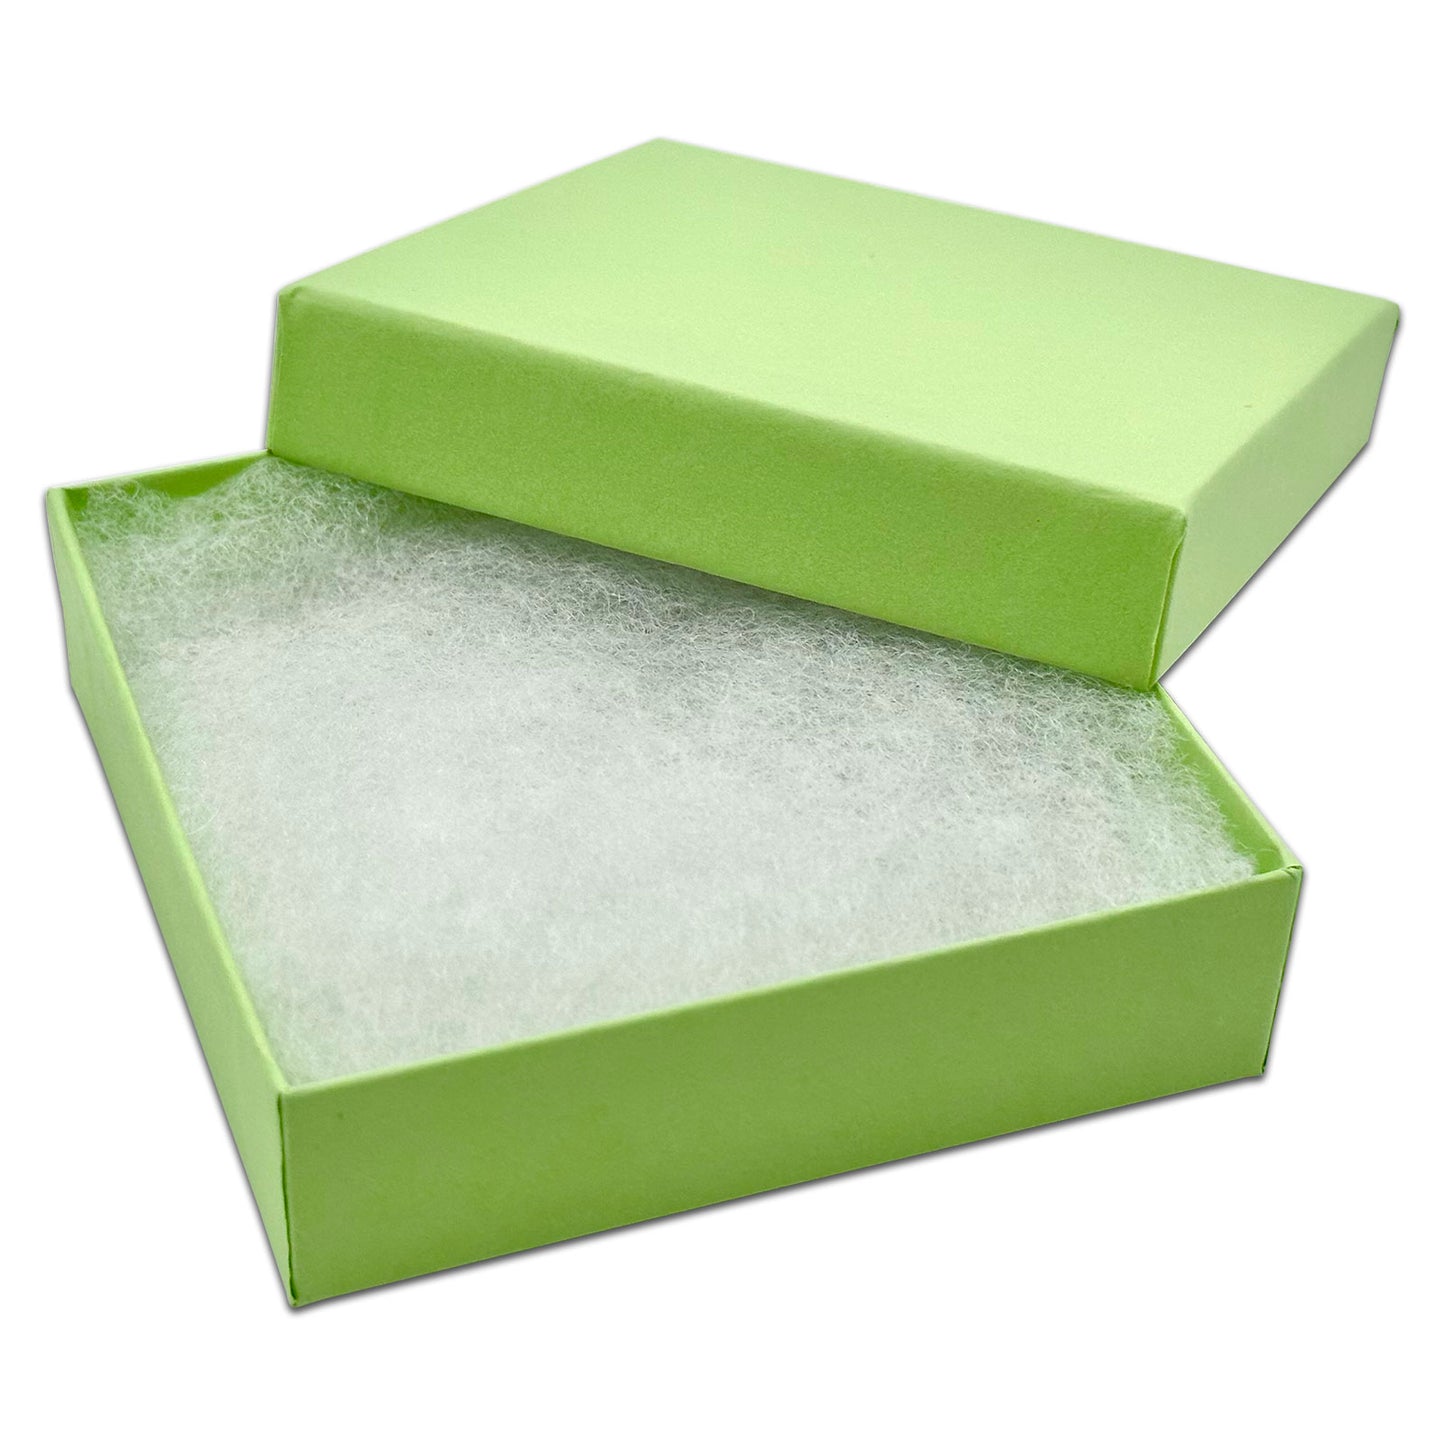 3 1/2" x 3 1/2" x 1" Mint Green Cotton Filled Paper Box